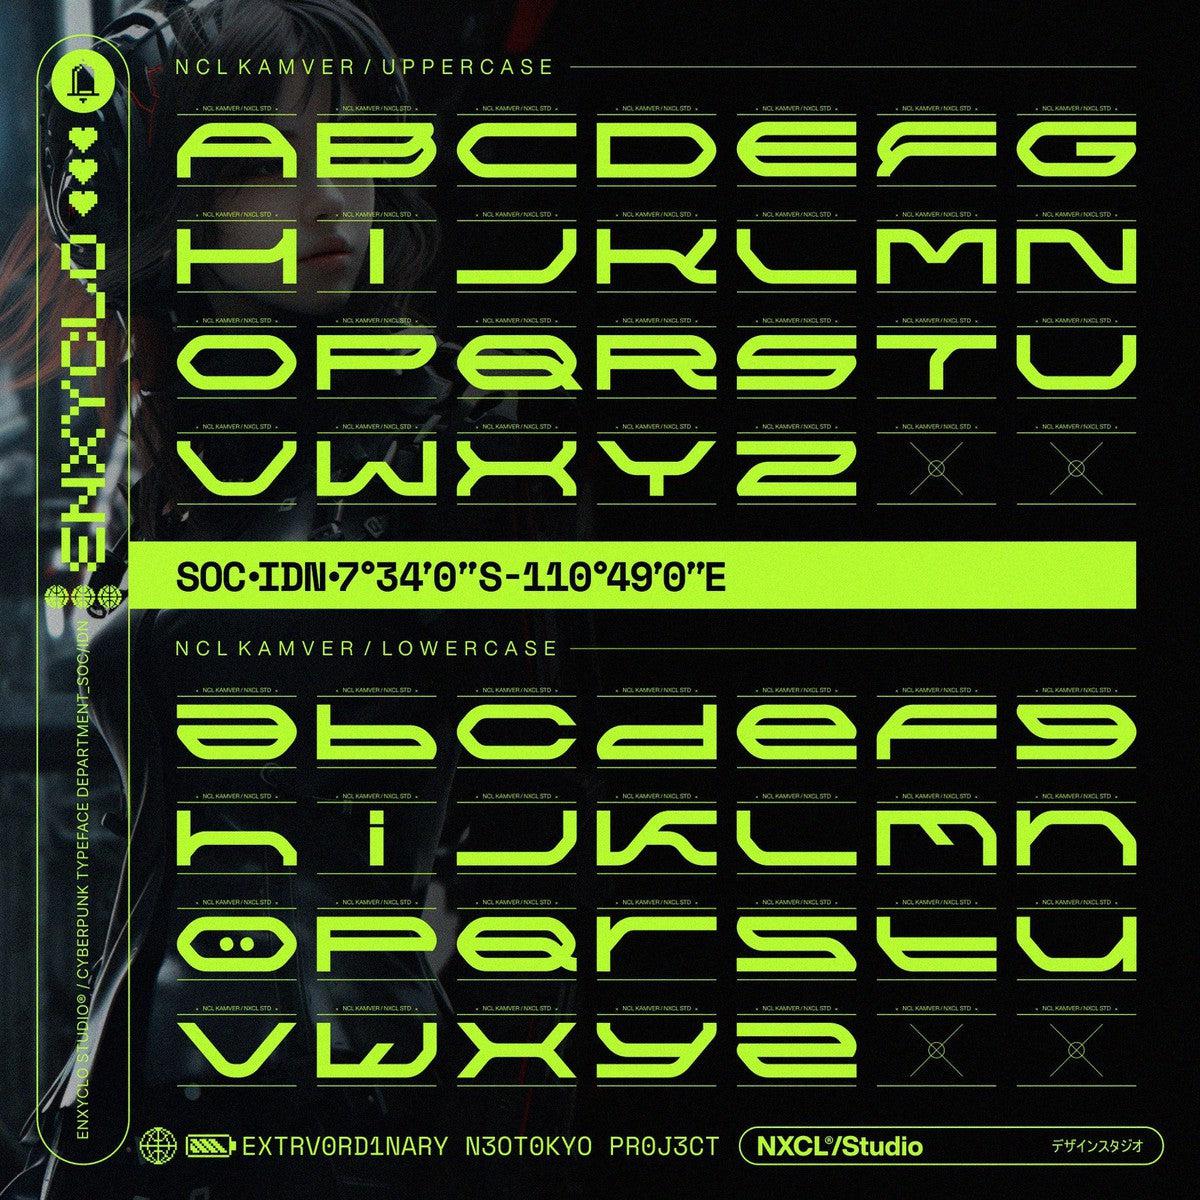 NCL Kamver - Futuristic Cyberpunk Space Techno Font